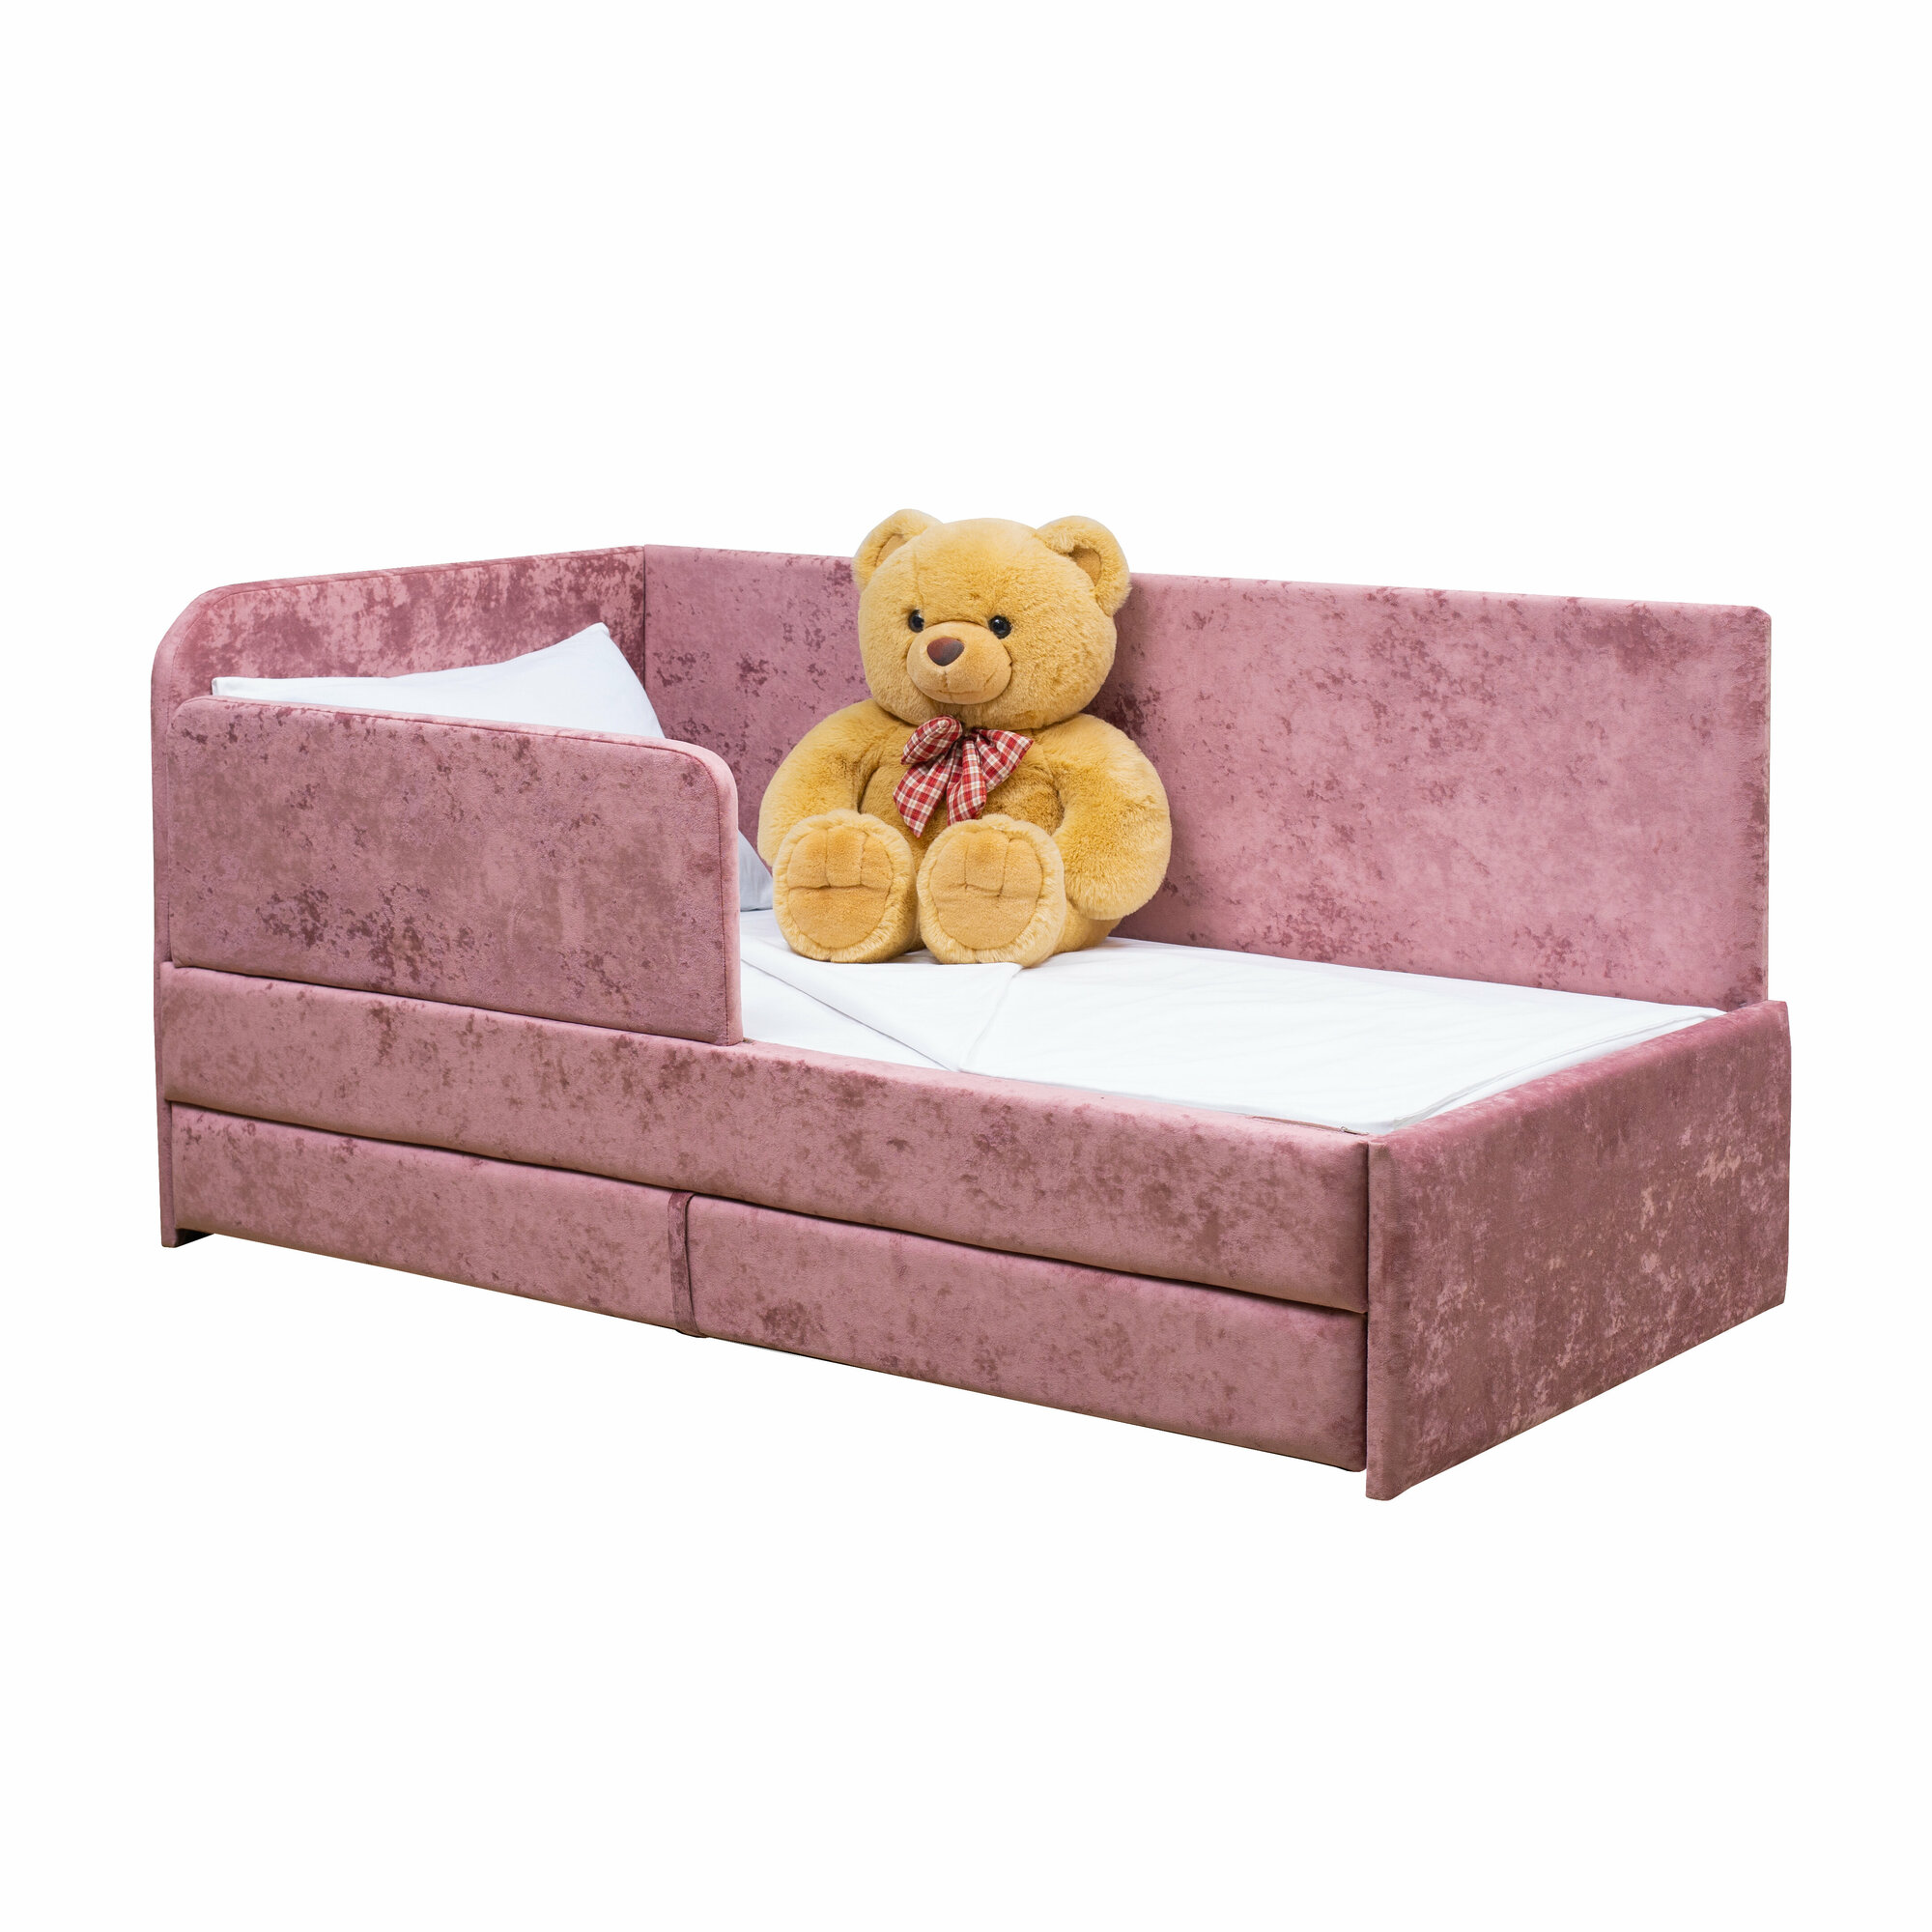 Кровать-диван Непоседа 200*90 розовая 2-а спальных места с защитным бортиком, левый угол сборки